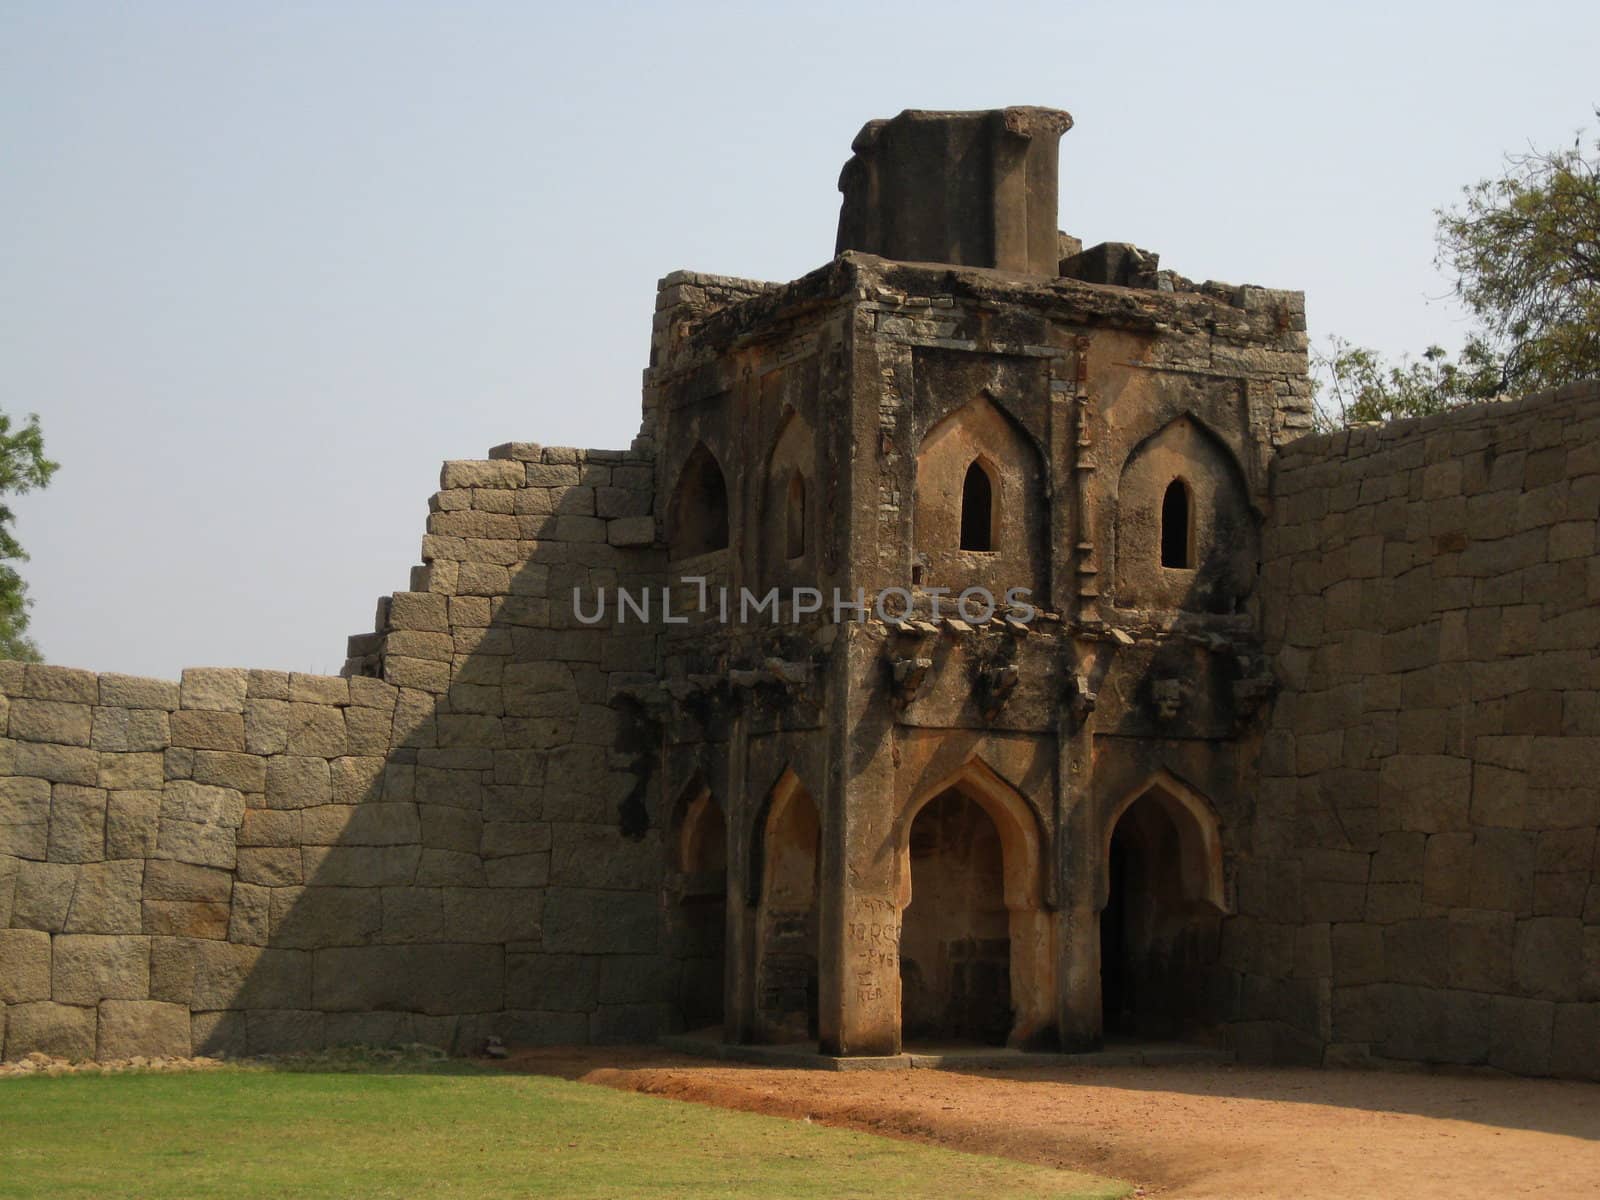 An ancient watchtower at the Lotus Mahal, Hampi, India